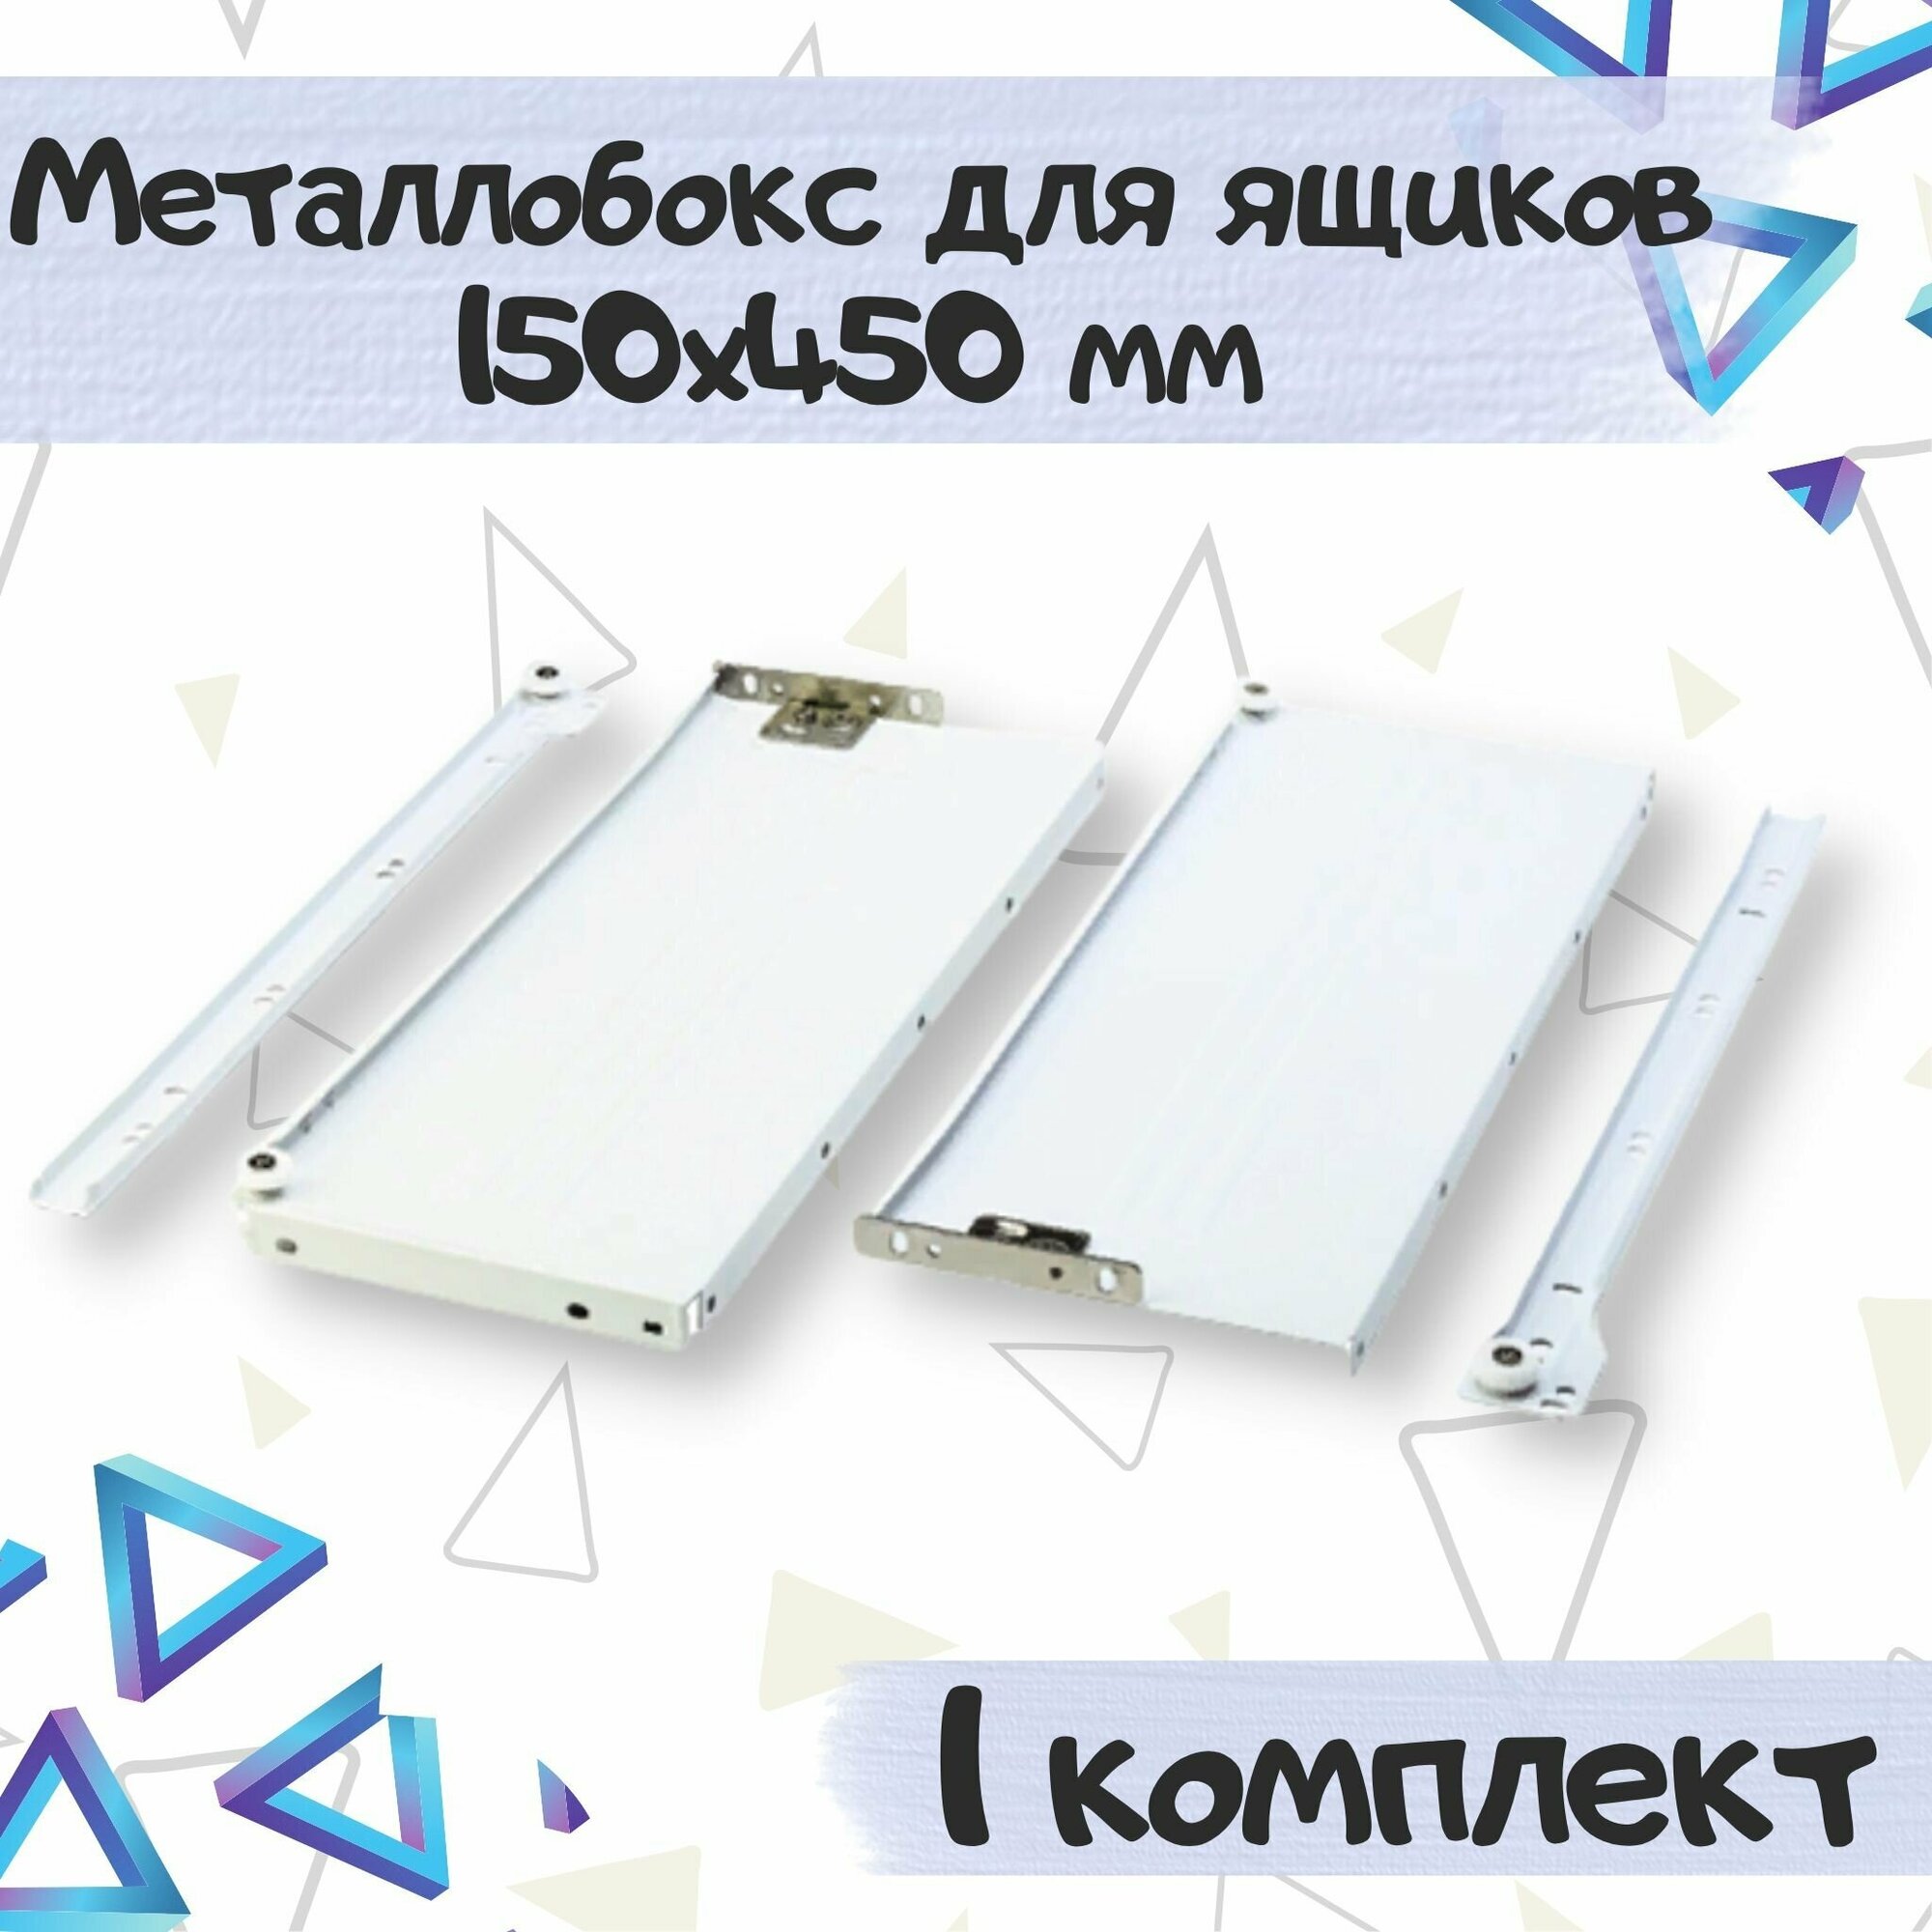 Металлобокс для ящиков 150х450 мм метабокс белый - 1 комплекта(для 1 ящика)